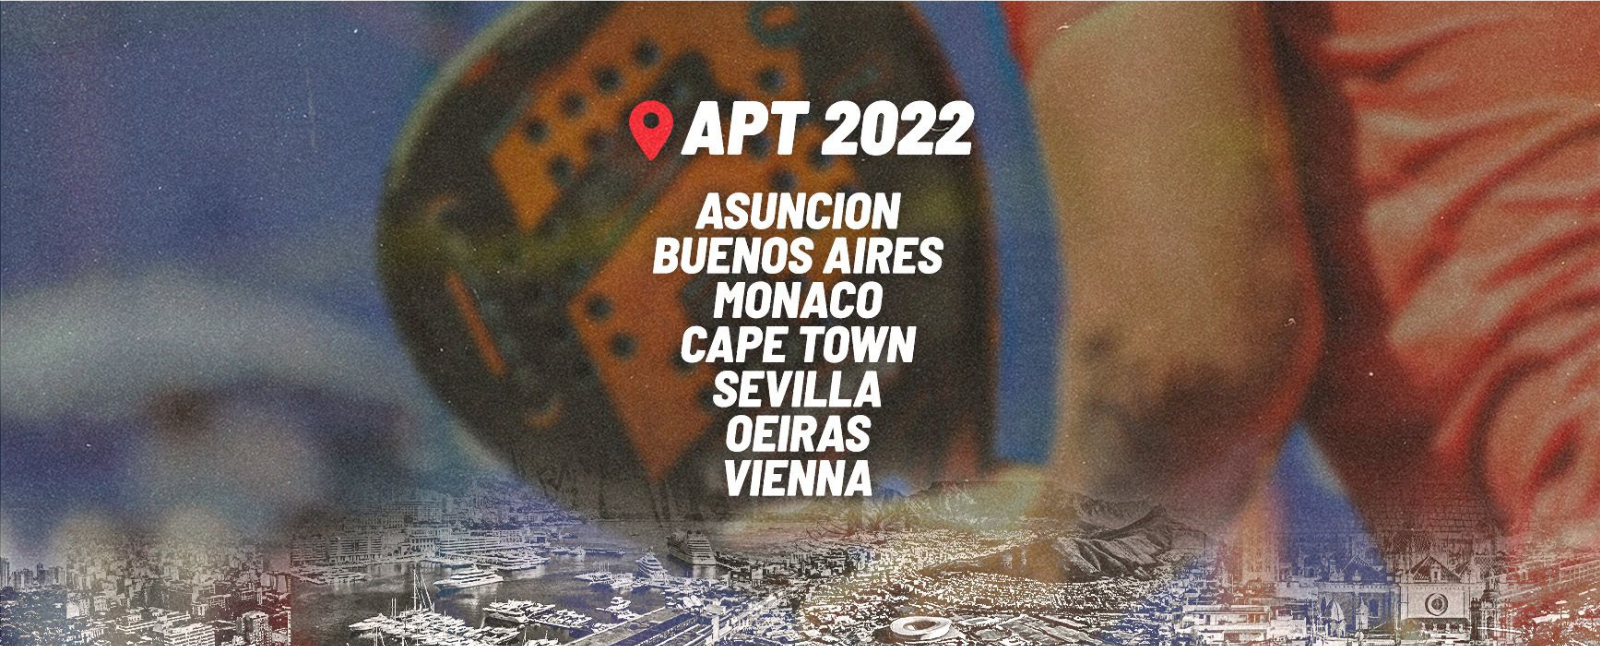 Le calendrier spectaculaire de l’APT Padel Tour pour 2022